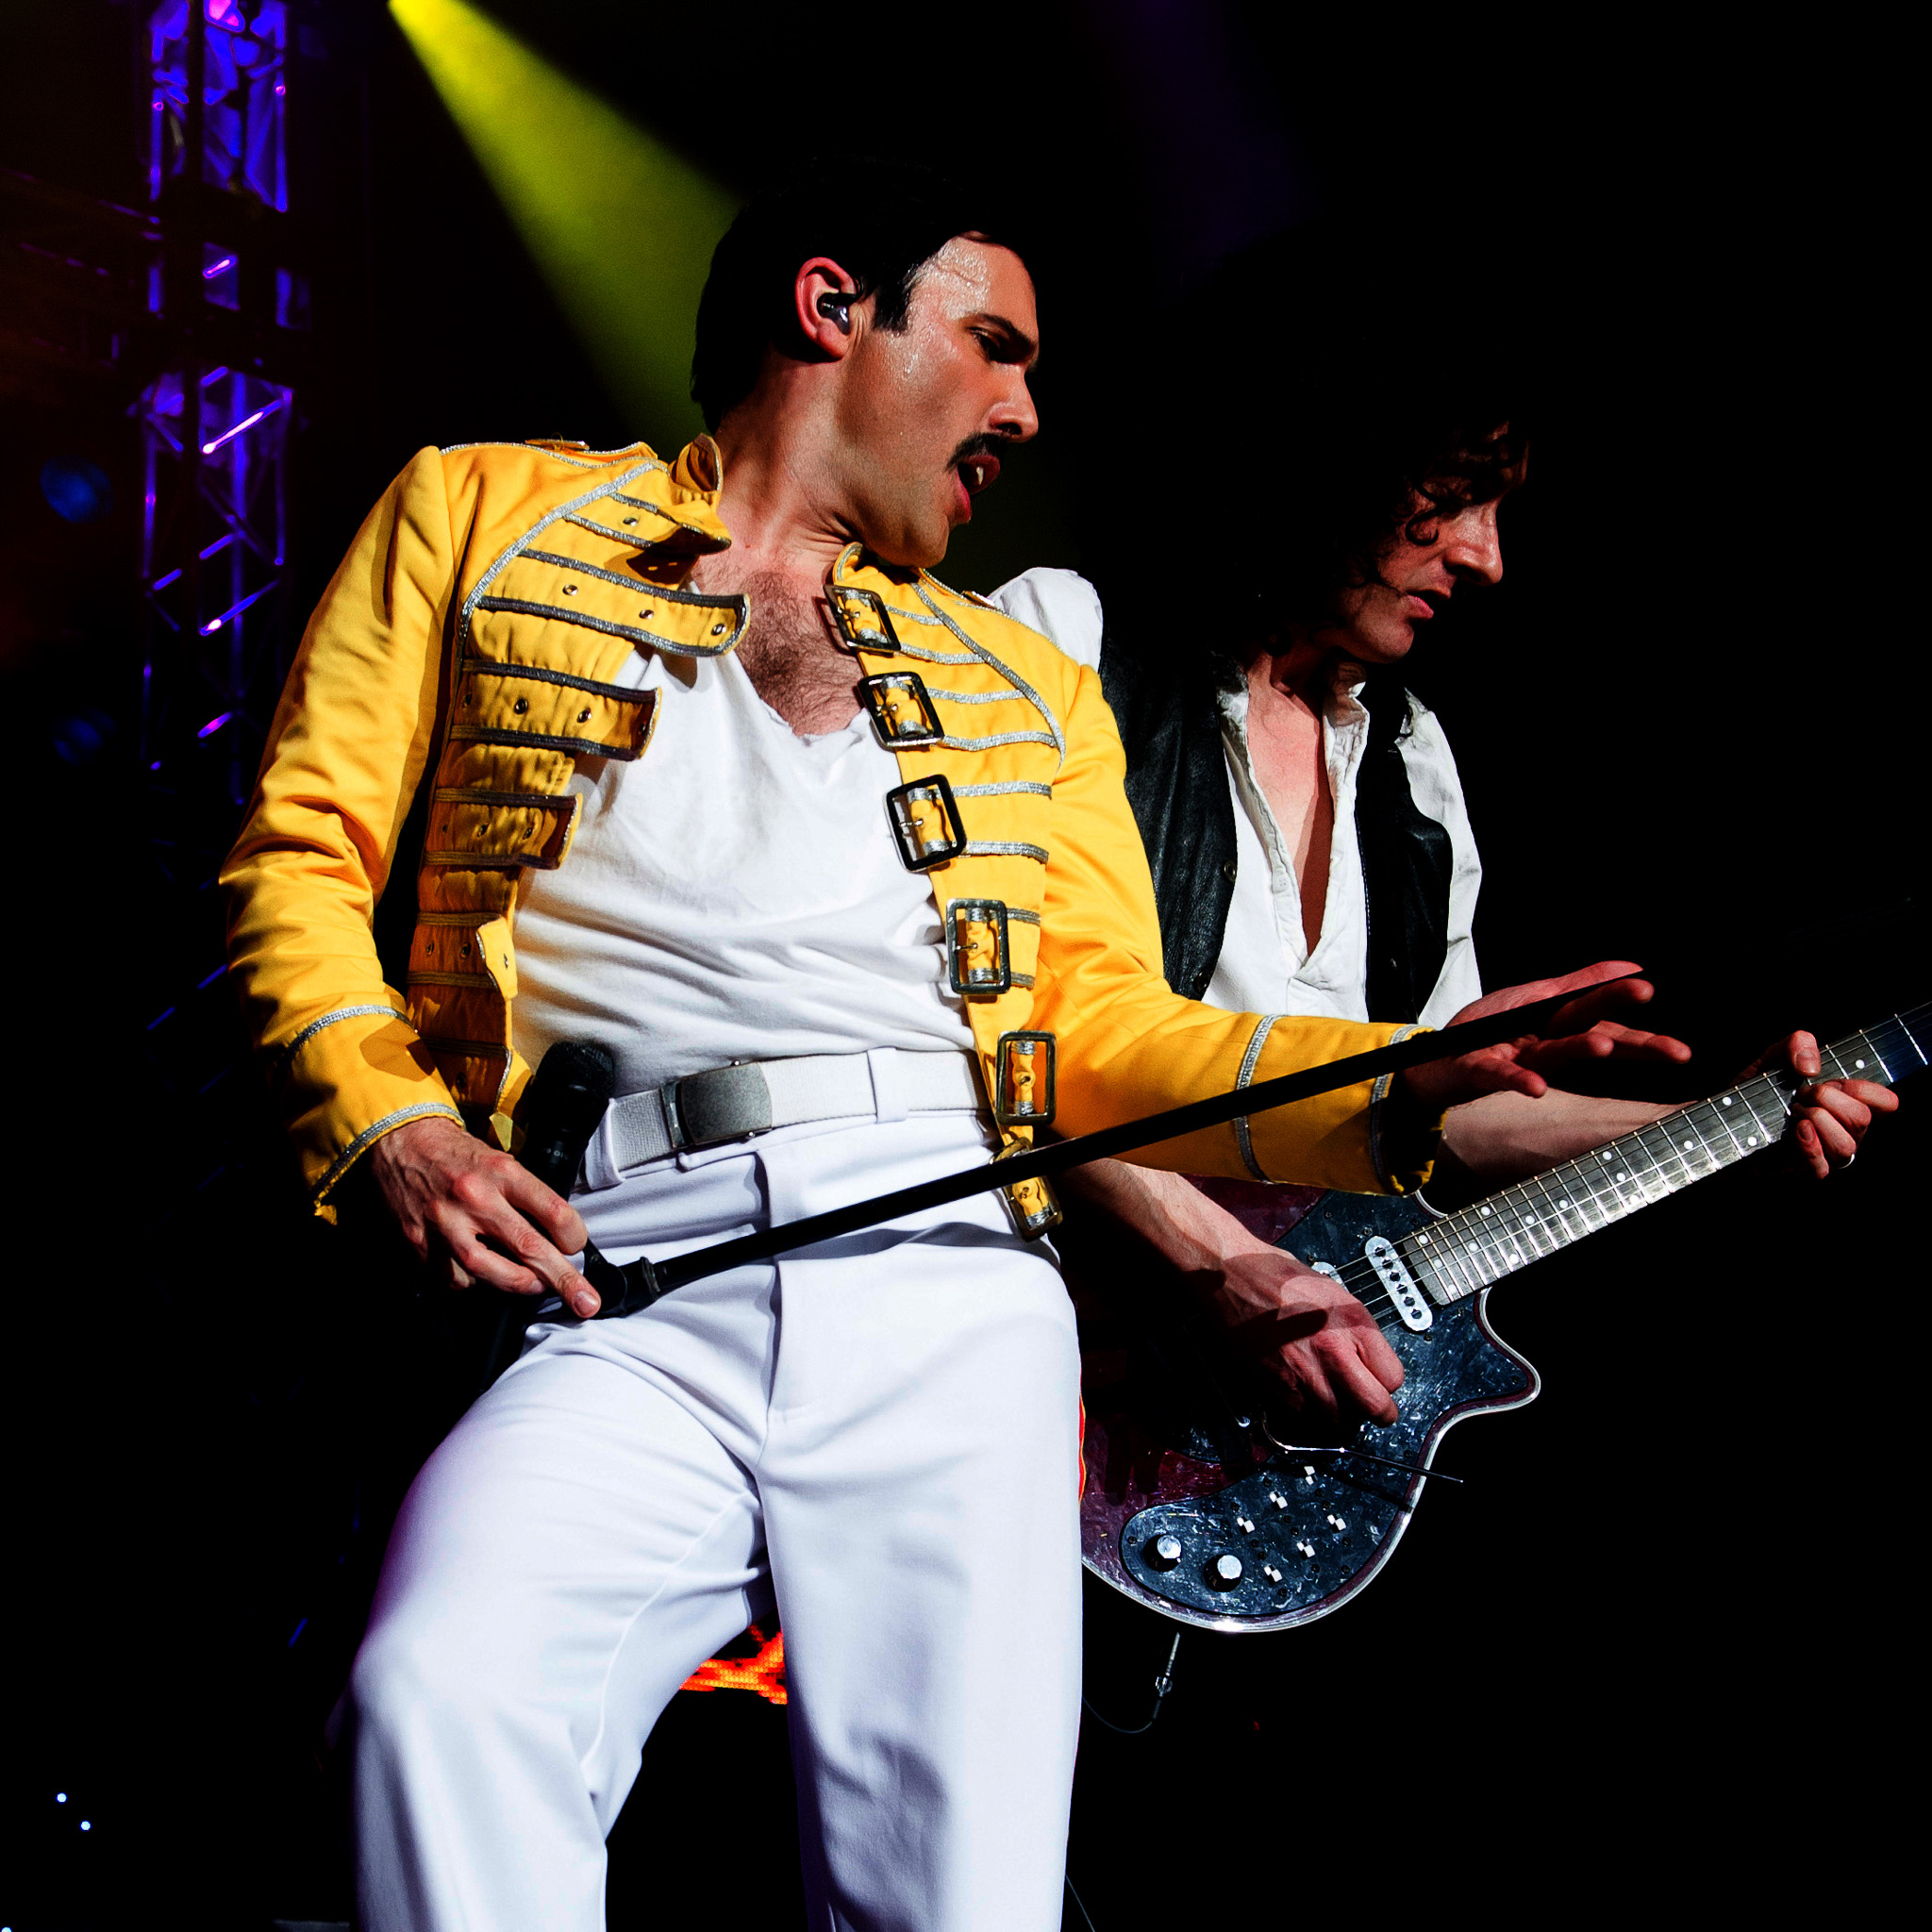 Patrick Meyers as Freddie Mercury on stage.